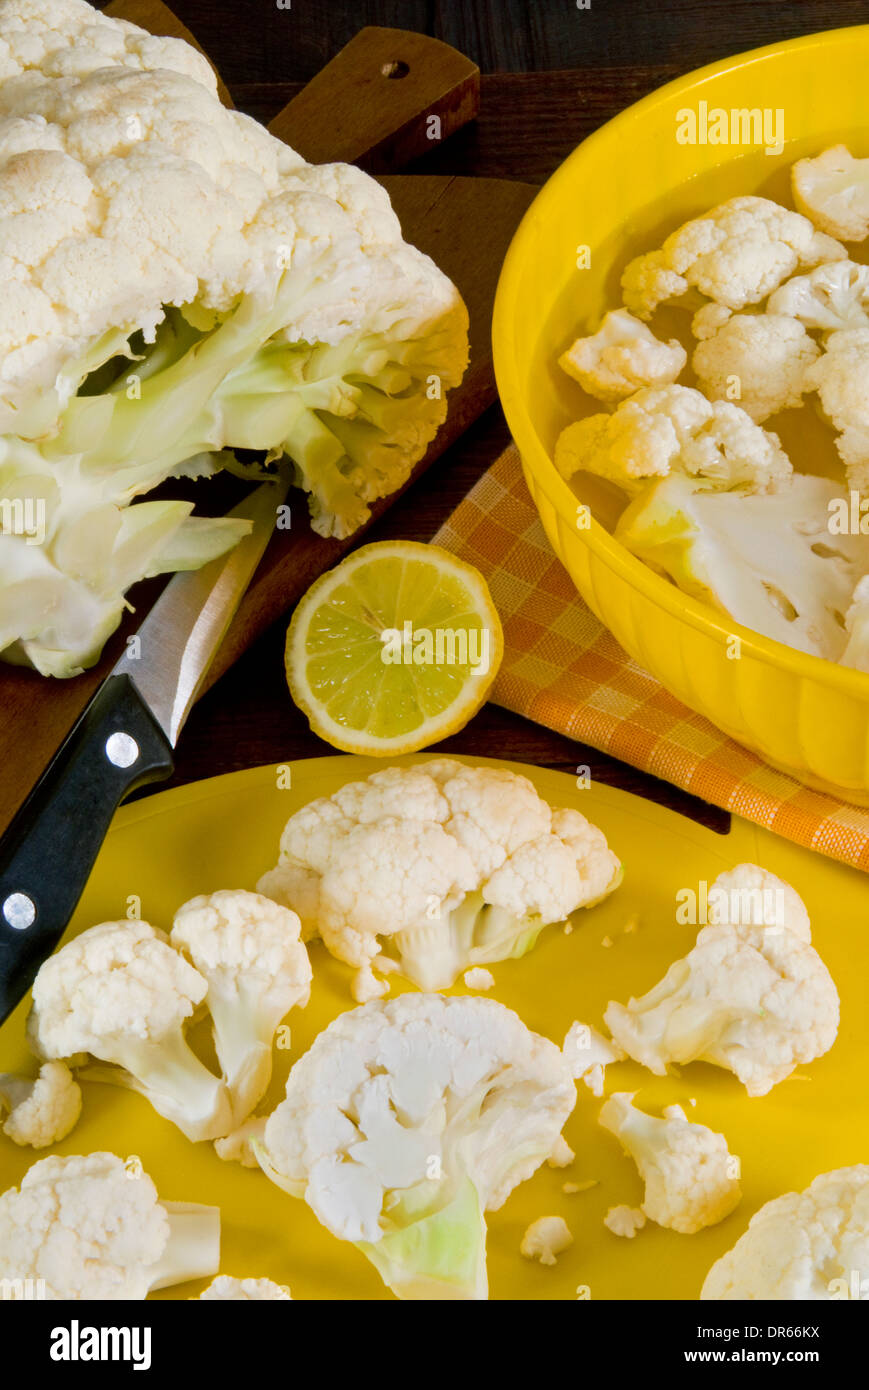 Cauliflower in a kitchen Stock Photo